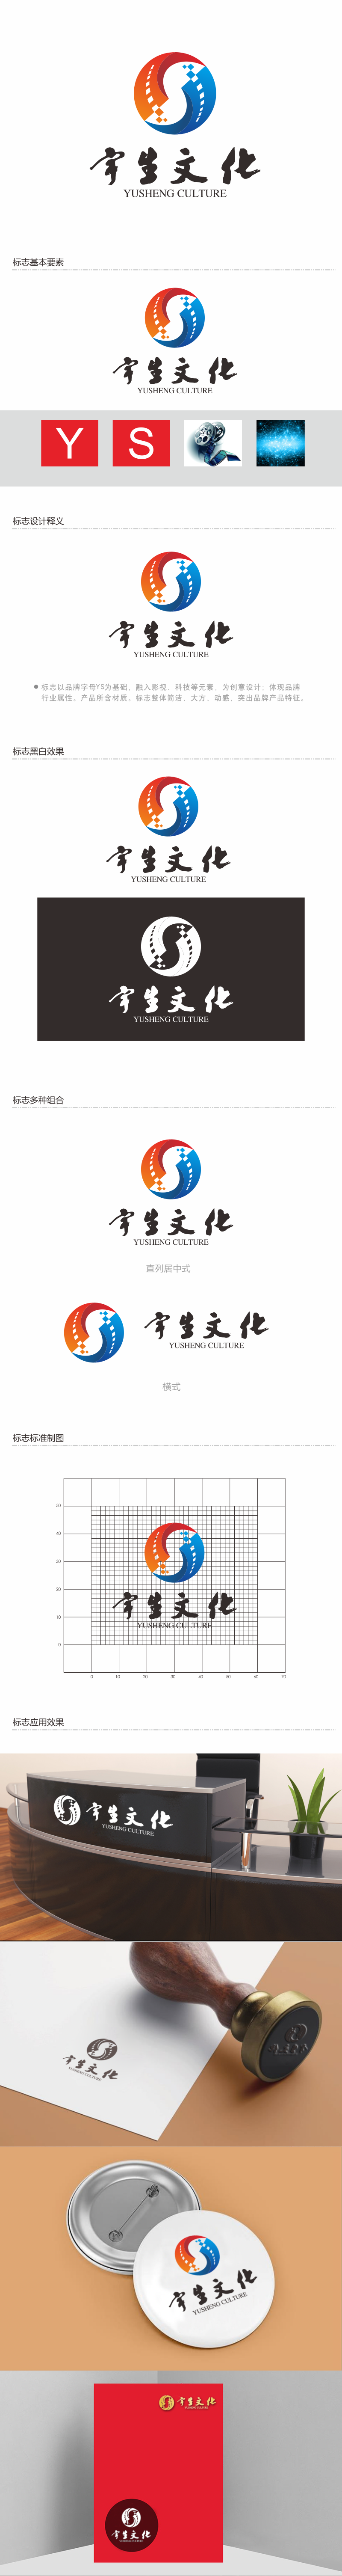 陈波的山东宇生文化股份有限公司logo设计